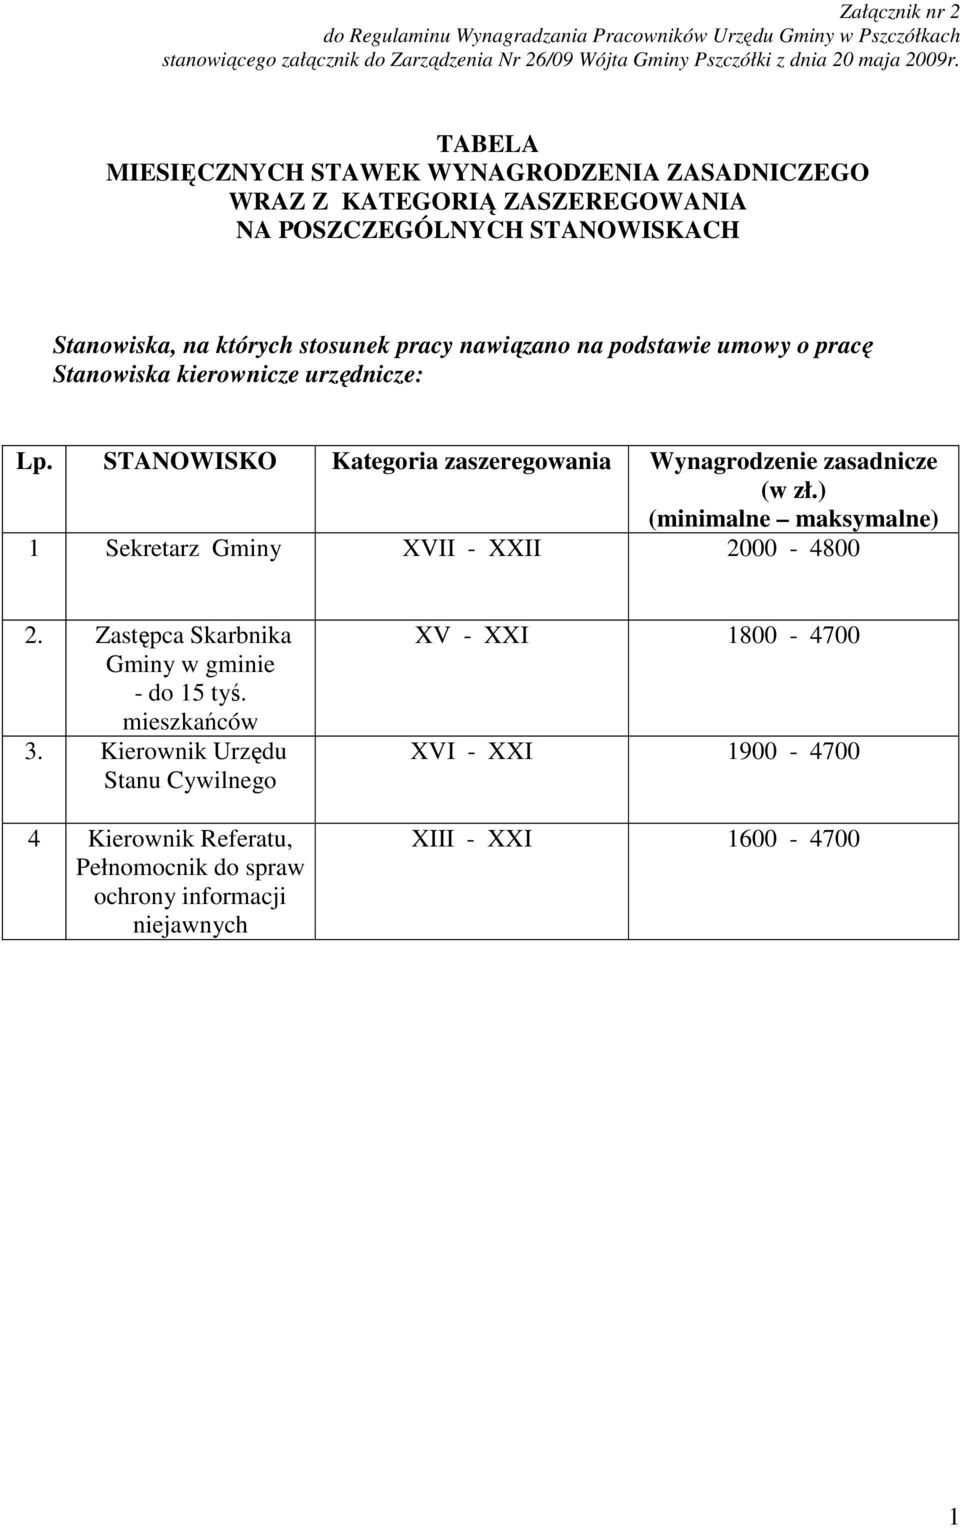 Stanowiska kierownicze urzędnicze: Lp. STANOWISKO Kategoria zaszeregowania Wynagrodzenie zasadnicze (w zł.) (minimalne maksymalne) 1 Sekretarz Gminy XVII - XXII 2000-4800 2.